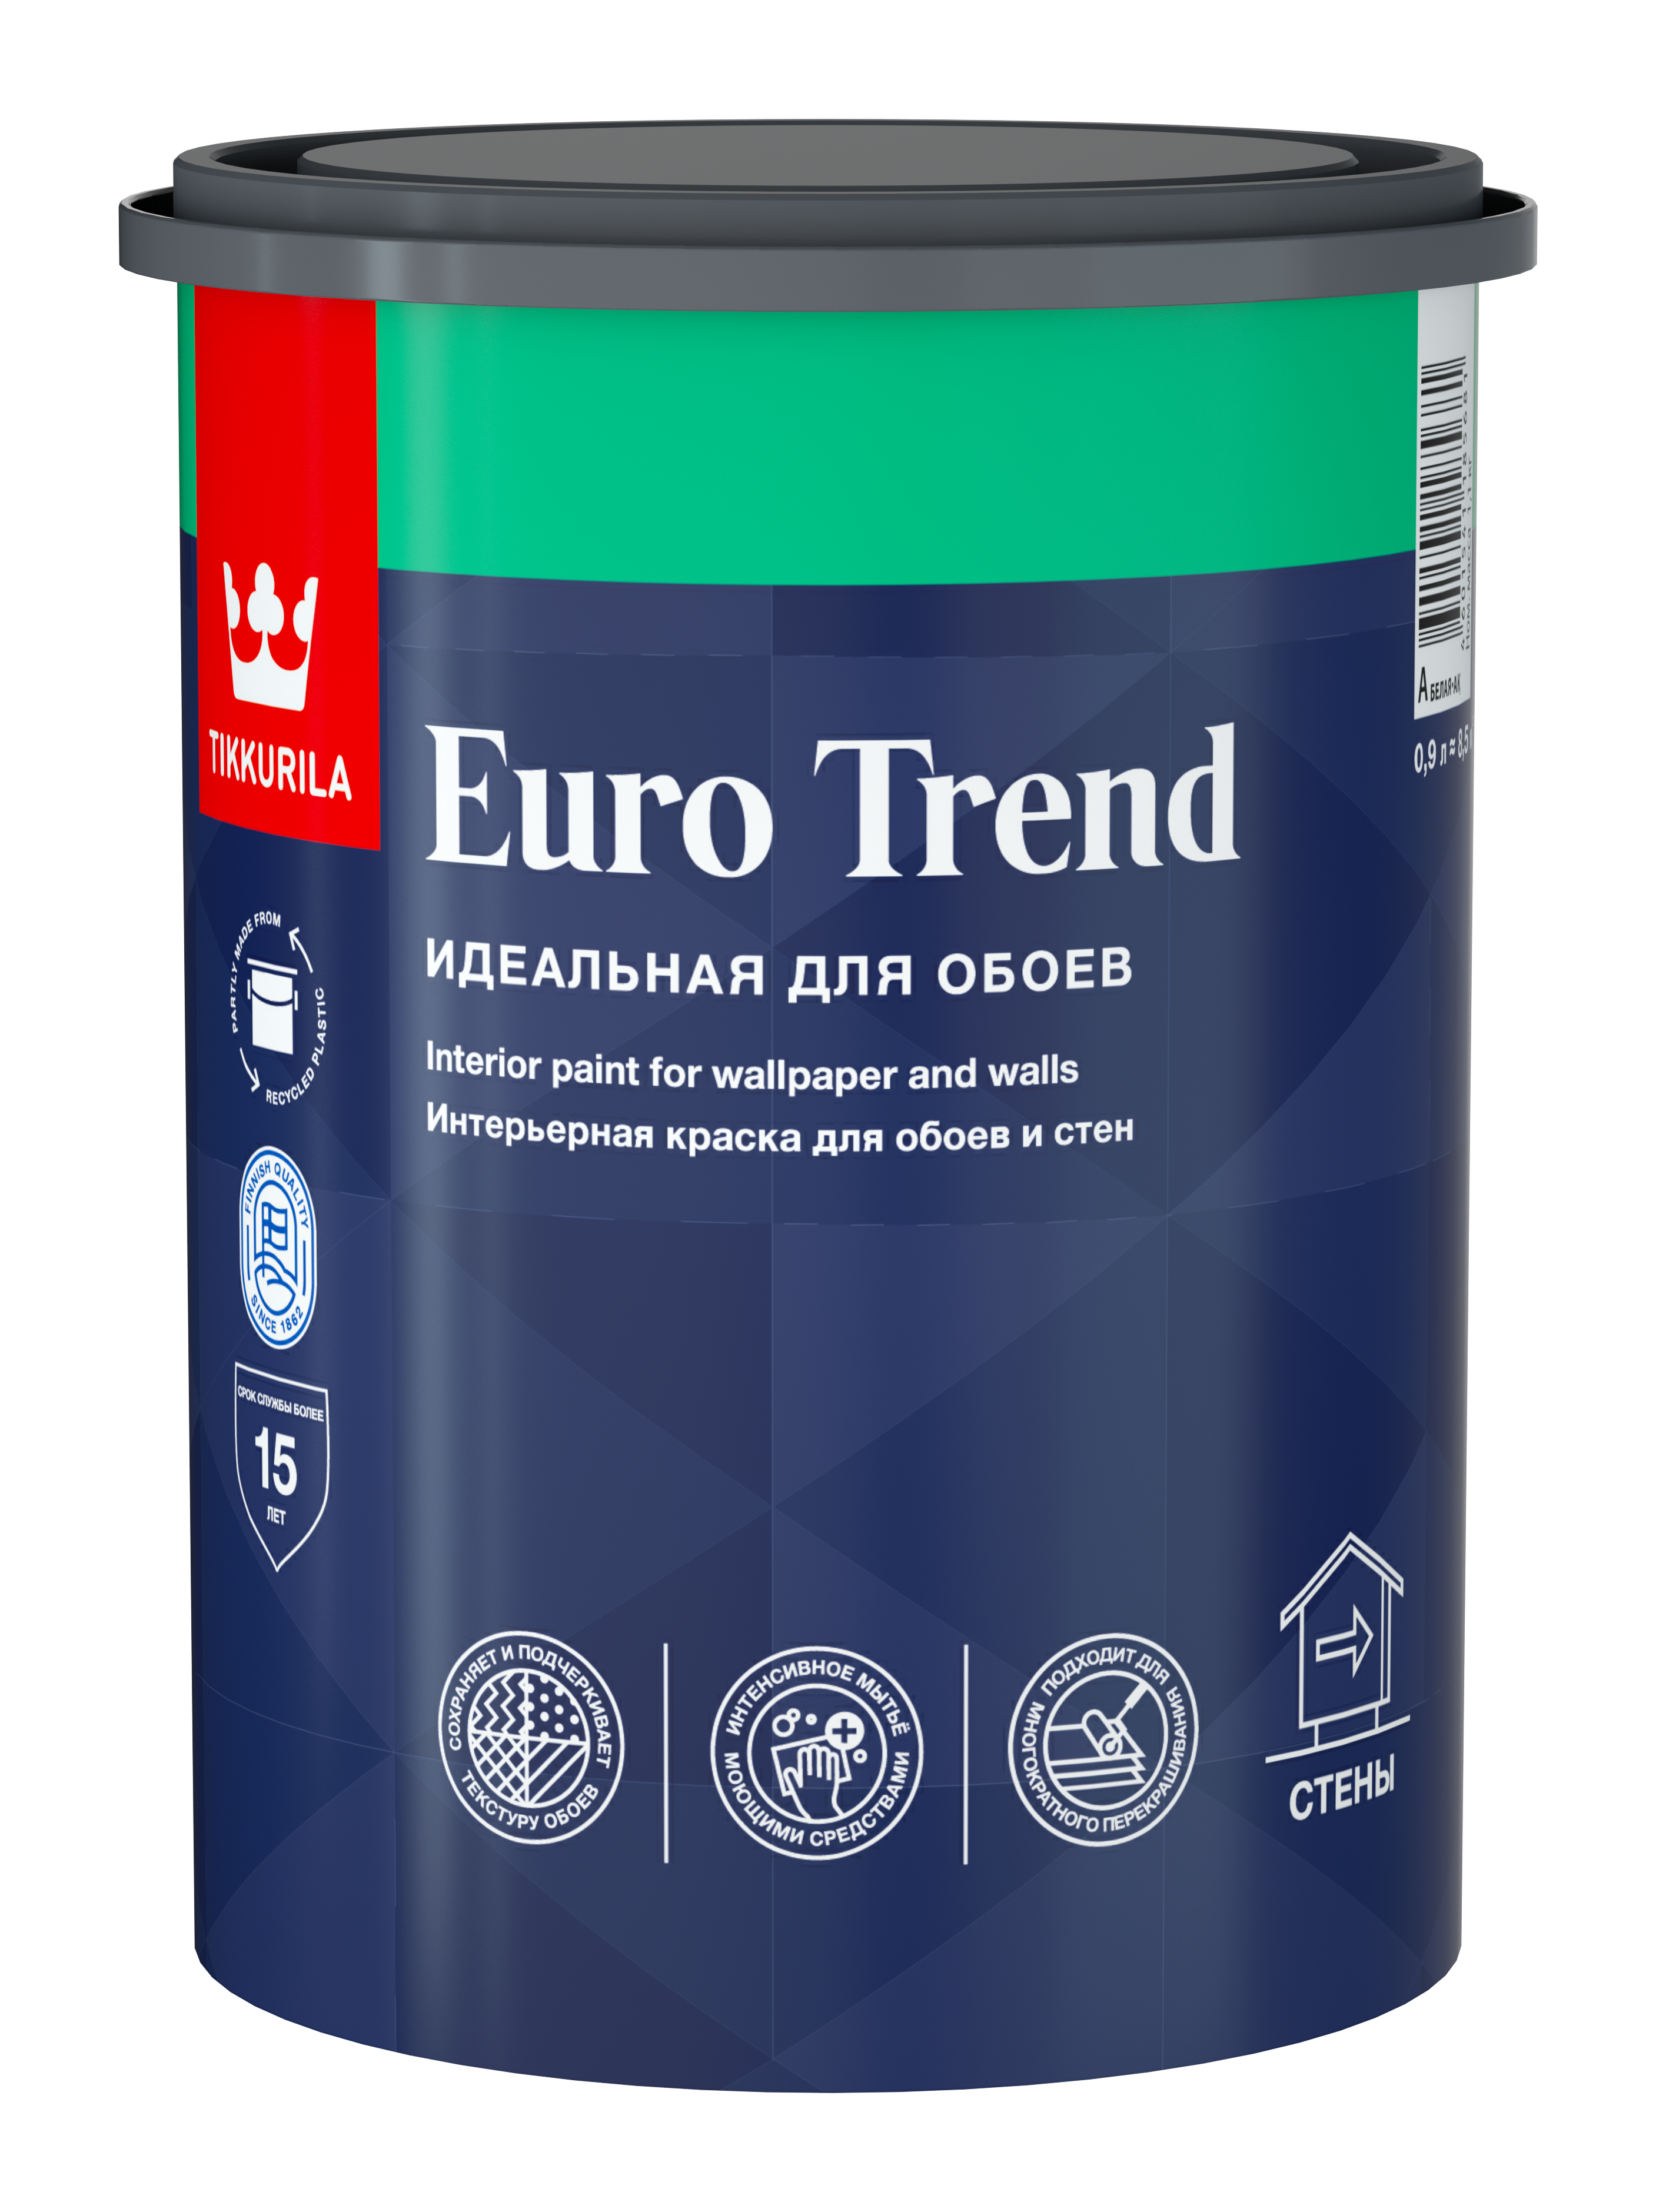 82115875 Краска интерьерная моющаяся для обоев и стен Euro Trend База A белая матовая 0.9 л STLM-0019449 TIKKURILA